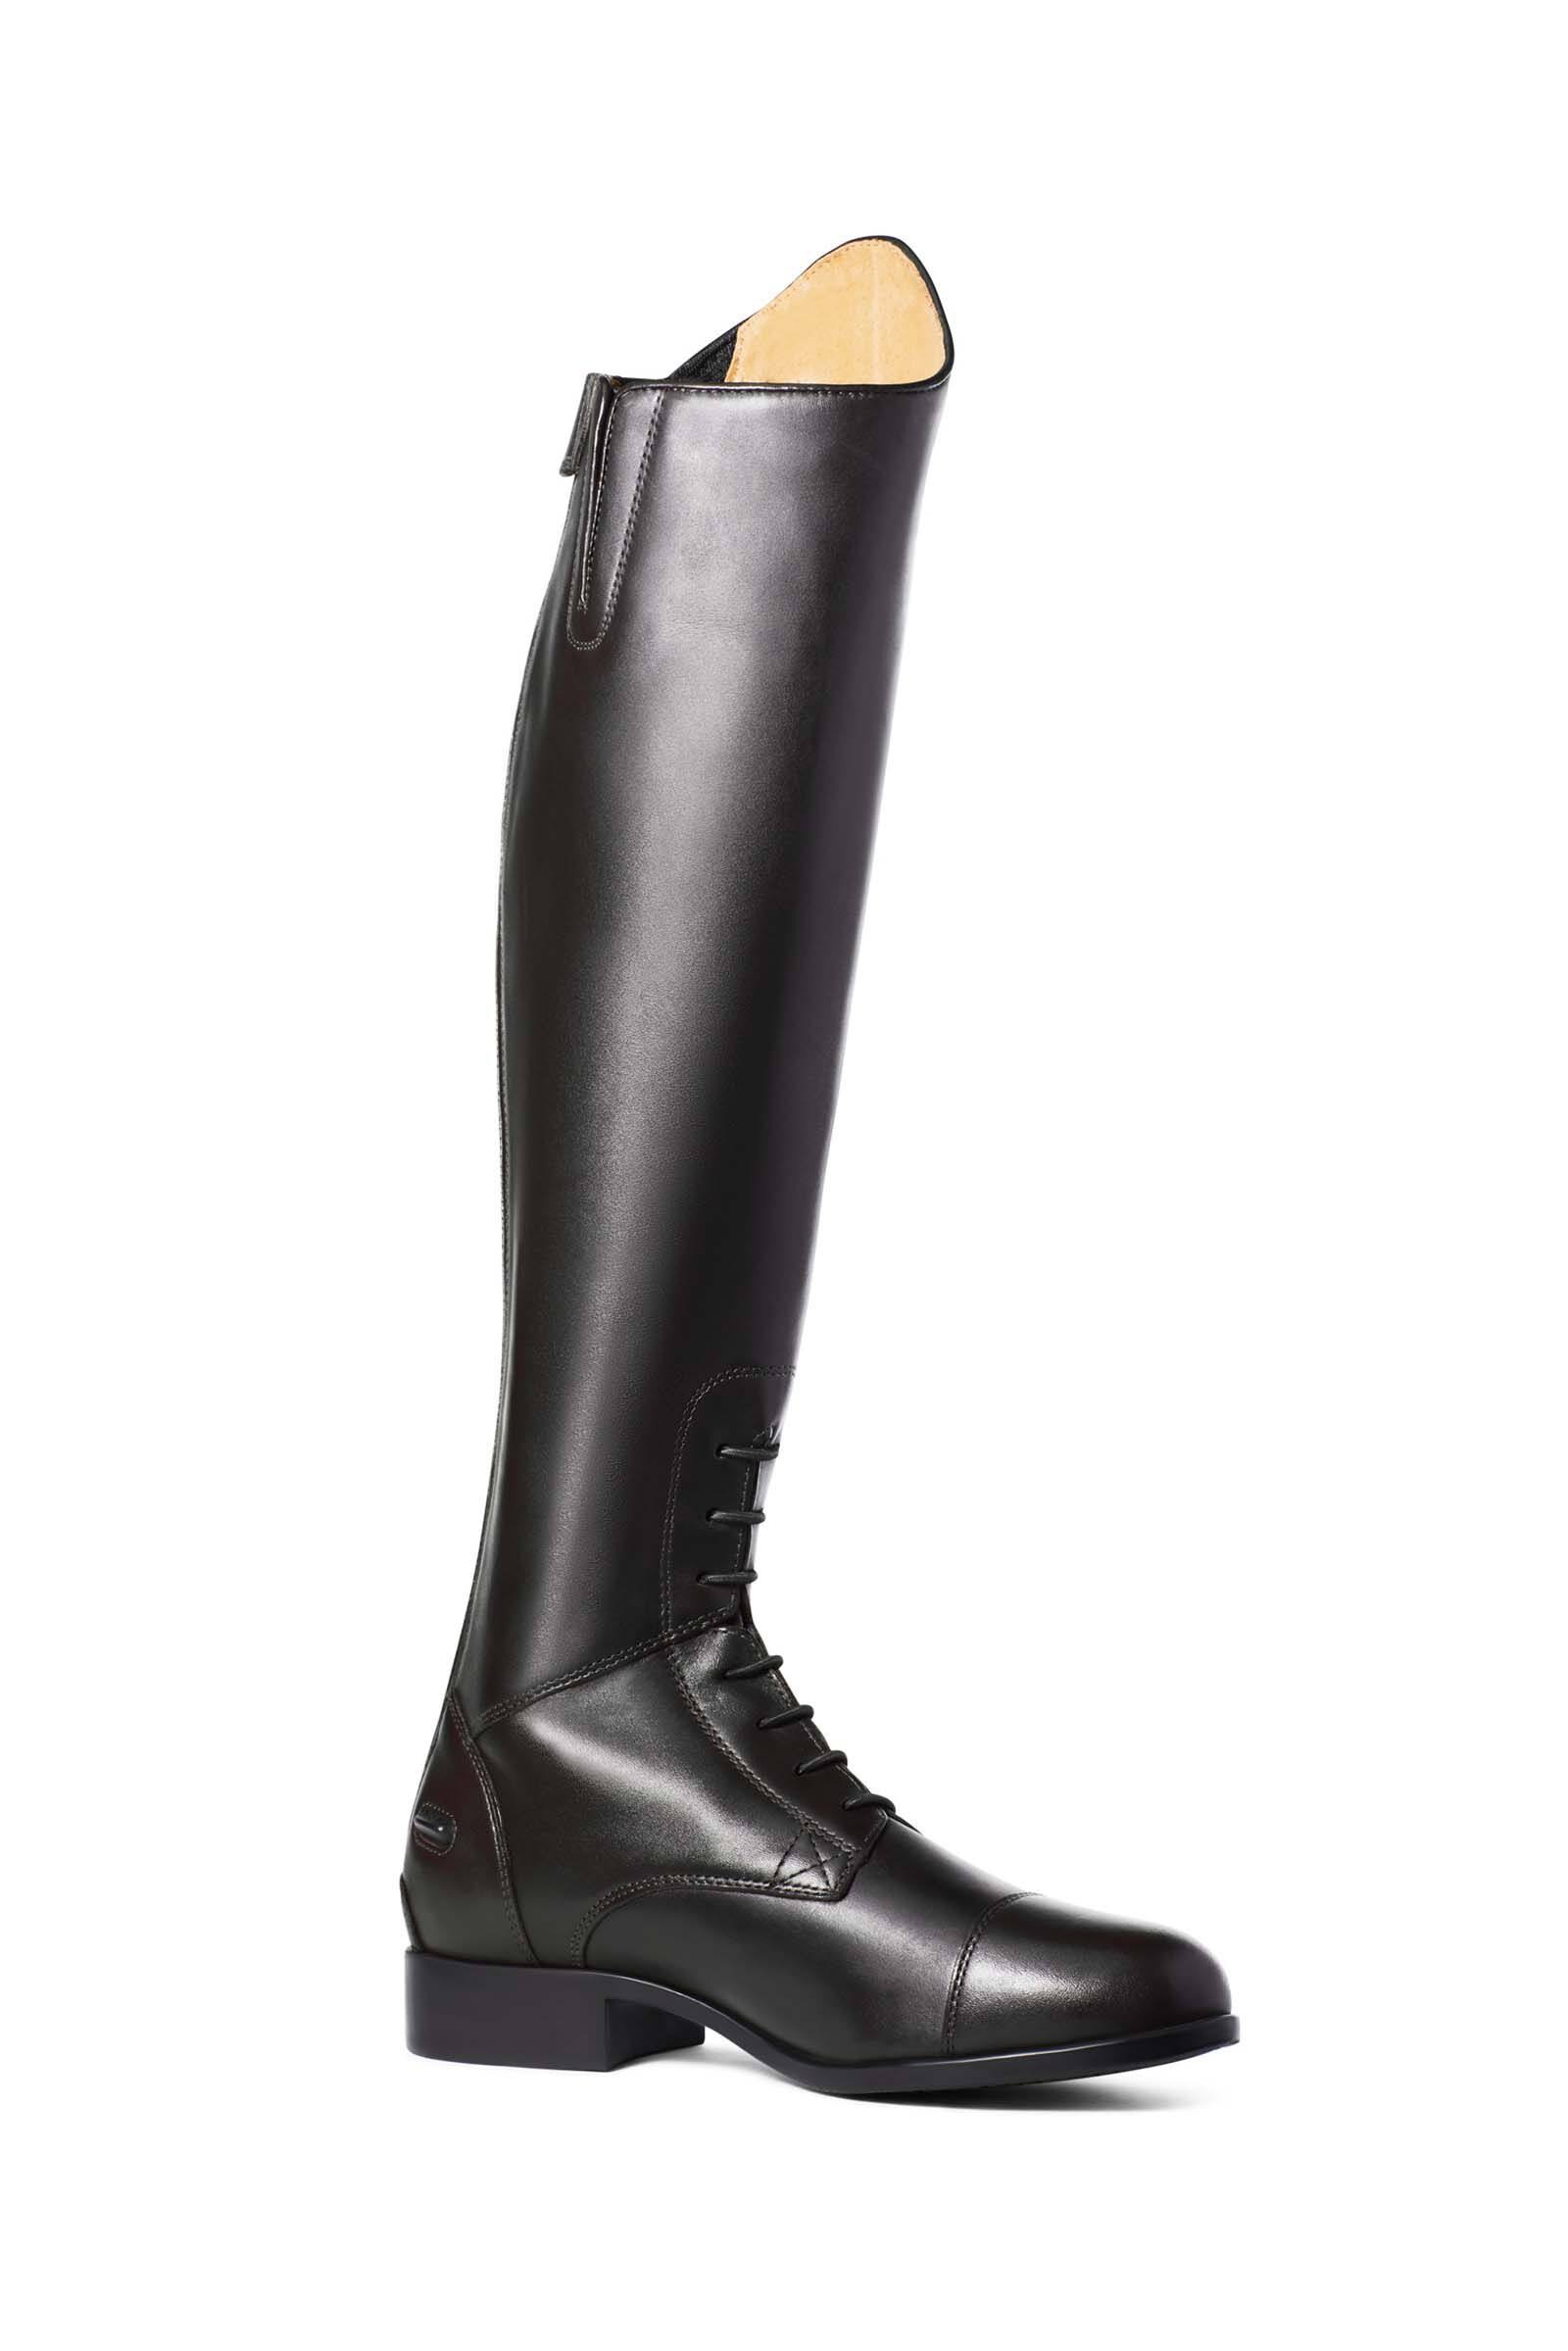 Ariat Ladies Heritage Contour II Field Zip Boot - Black, 5 UK